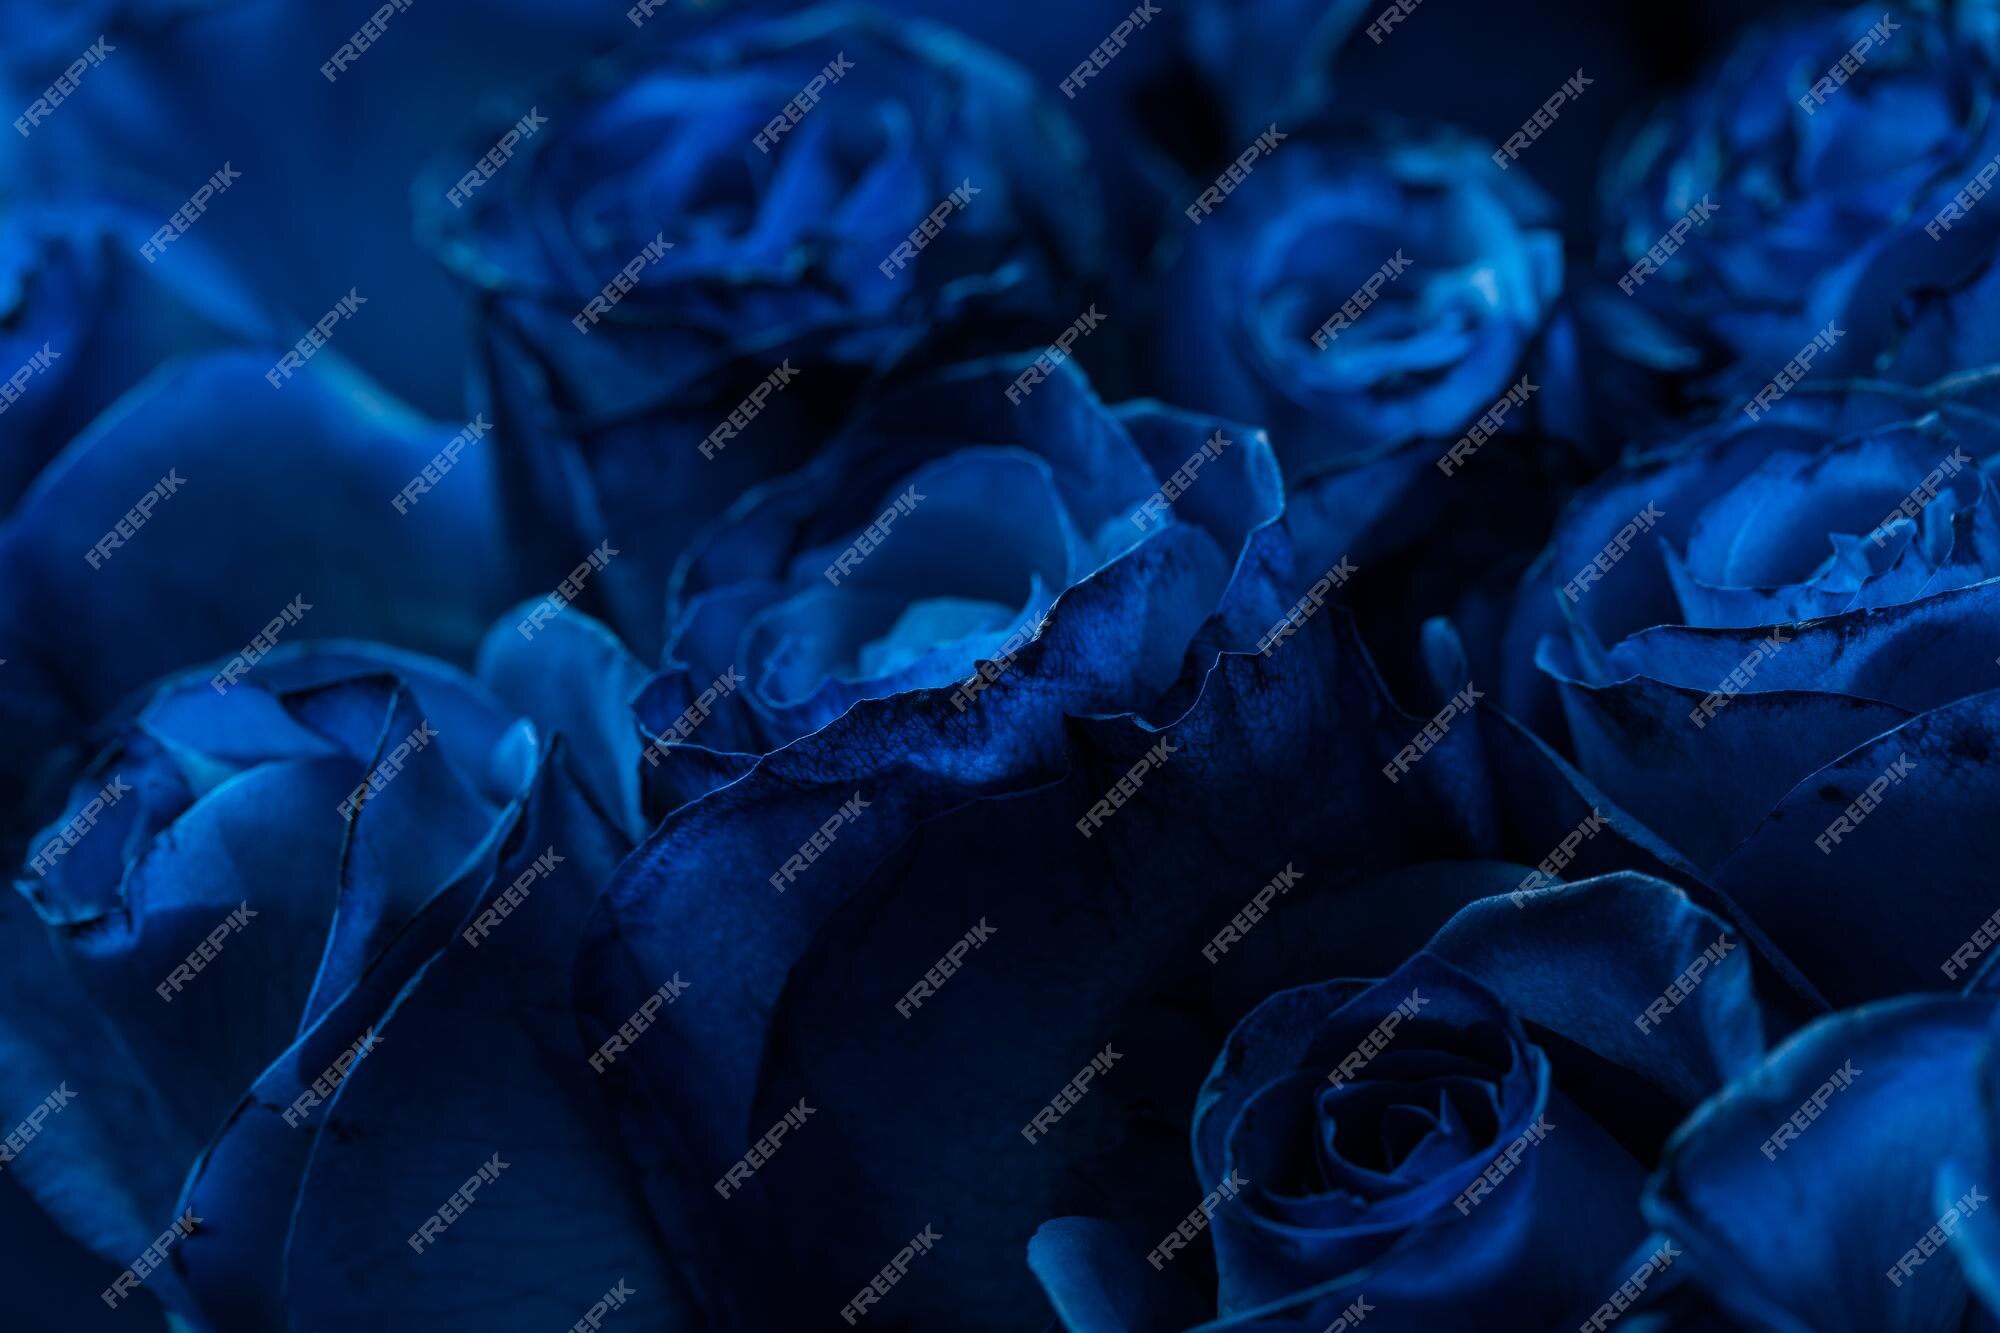 Dark Blue Rose Images - Free Download on Freepik